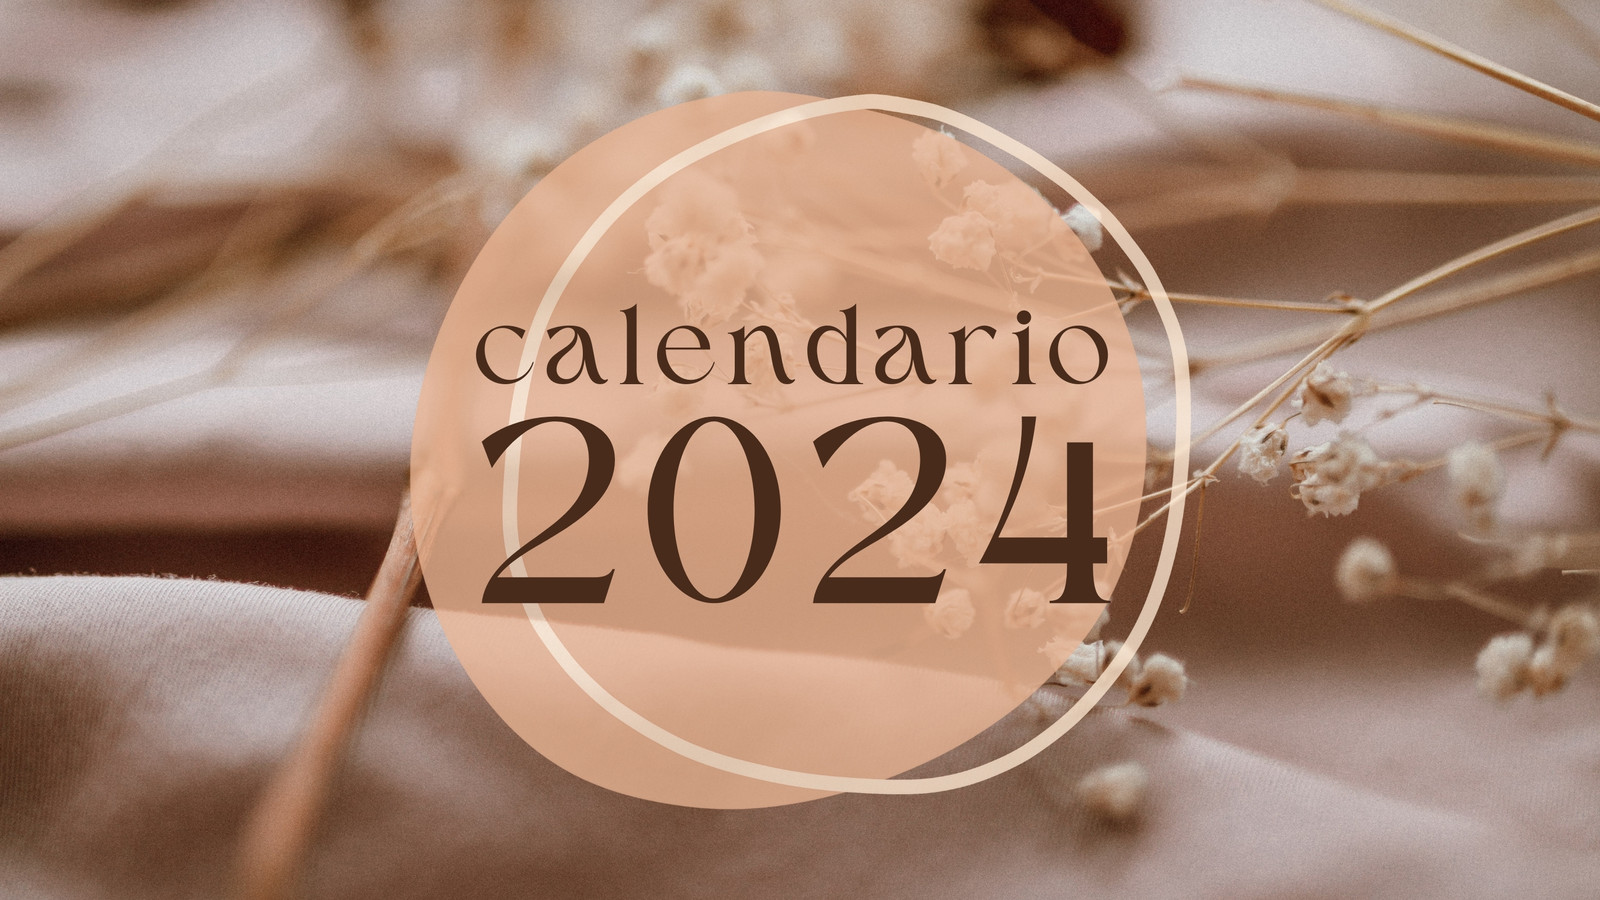 Modello Excel di calendario mensile 2024 / Calendario mensile 2024 con  obiettivi e attività / Pianificatore Excel mensile 2024 / Calendario 2024  stampabile -  Italia